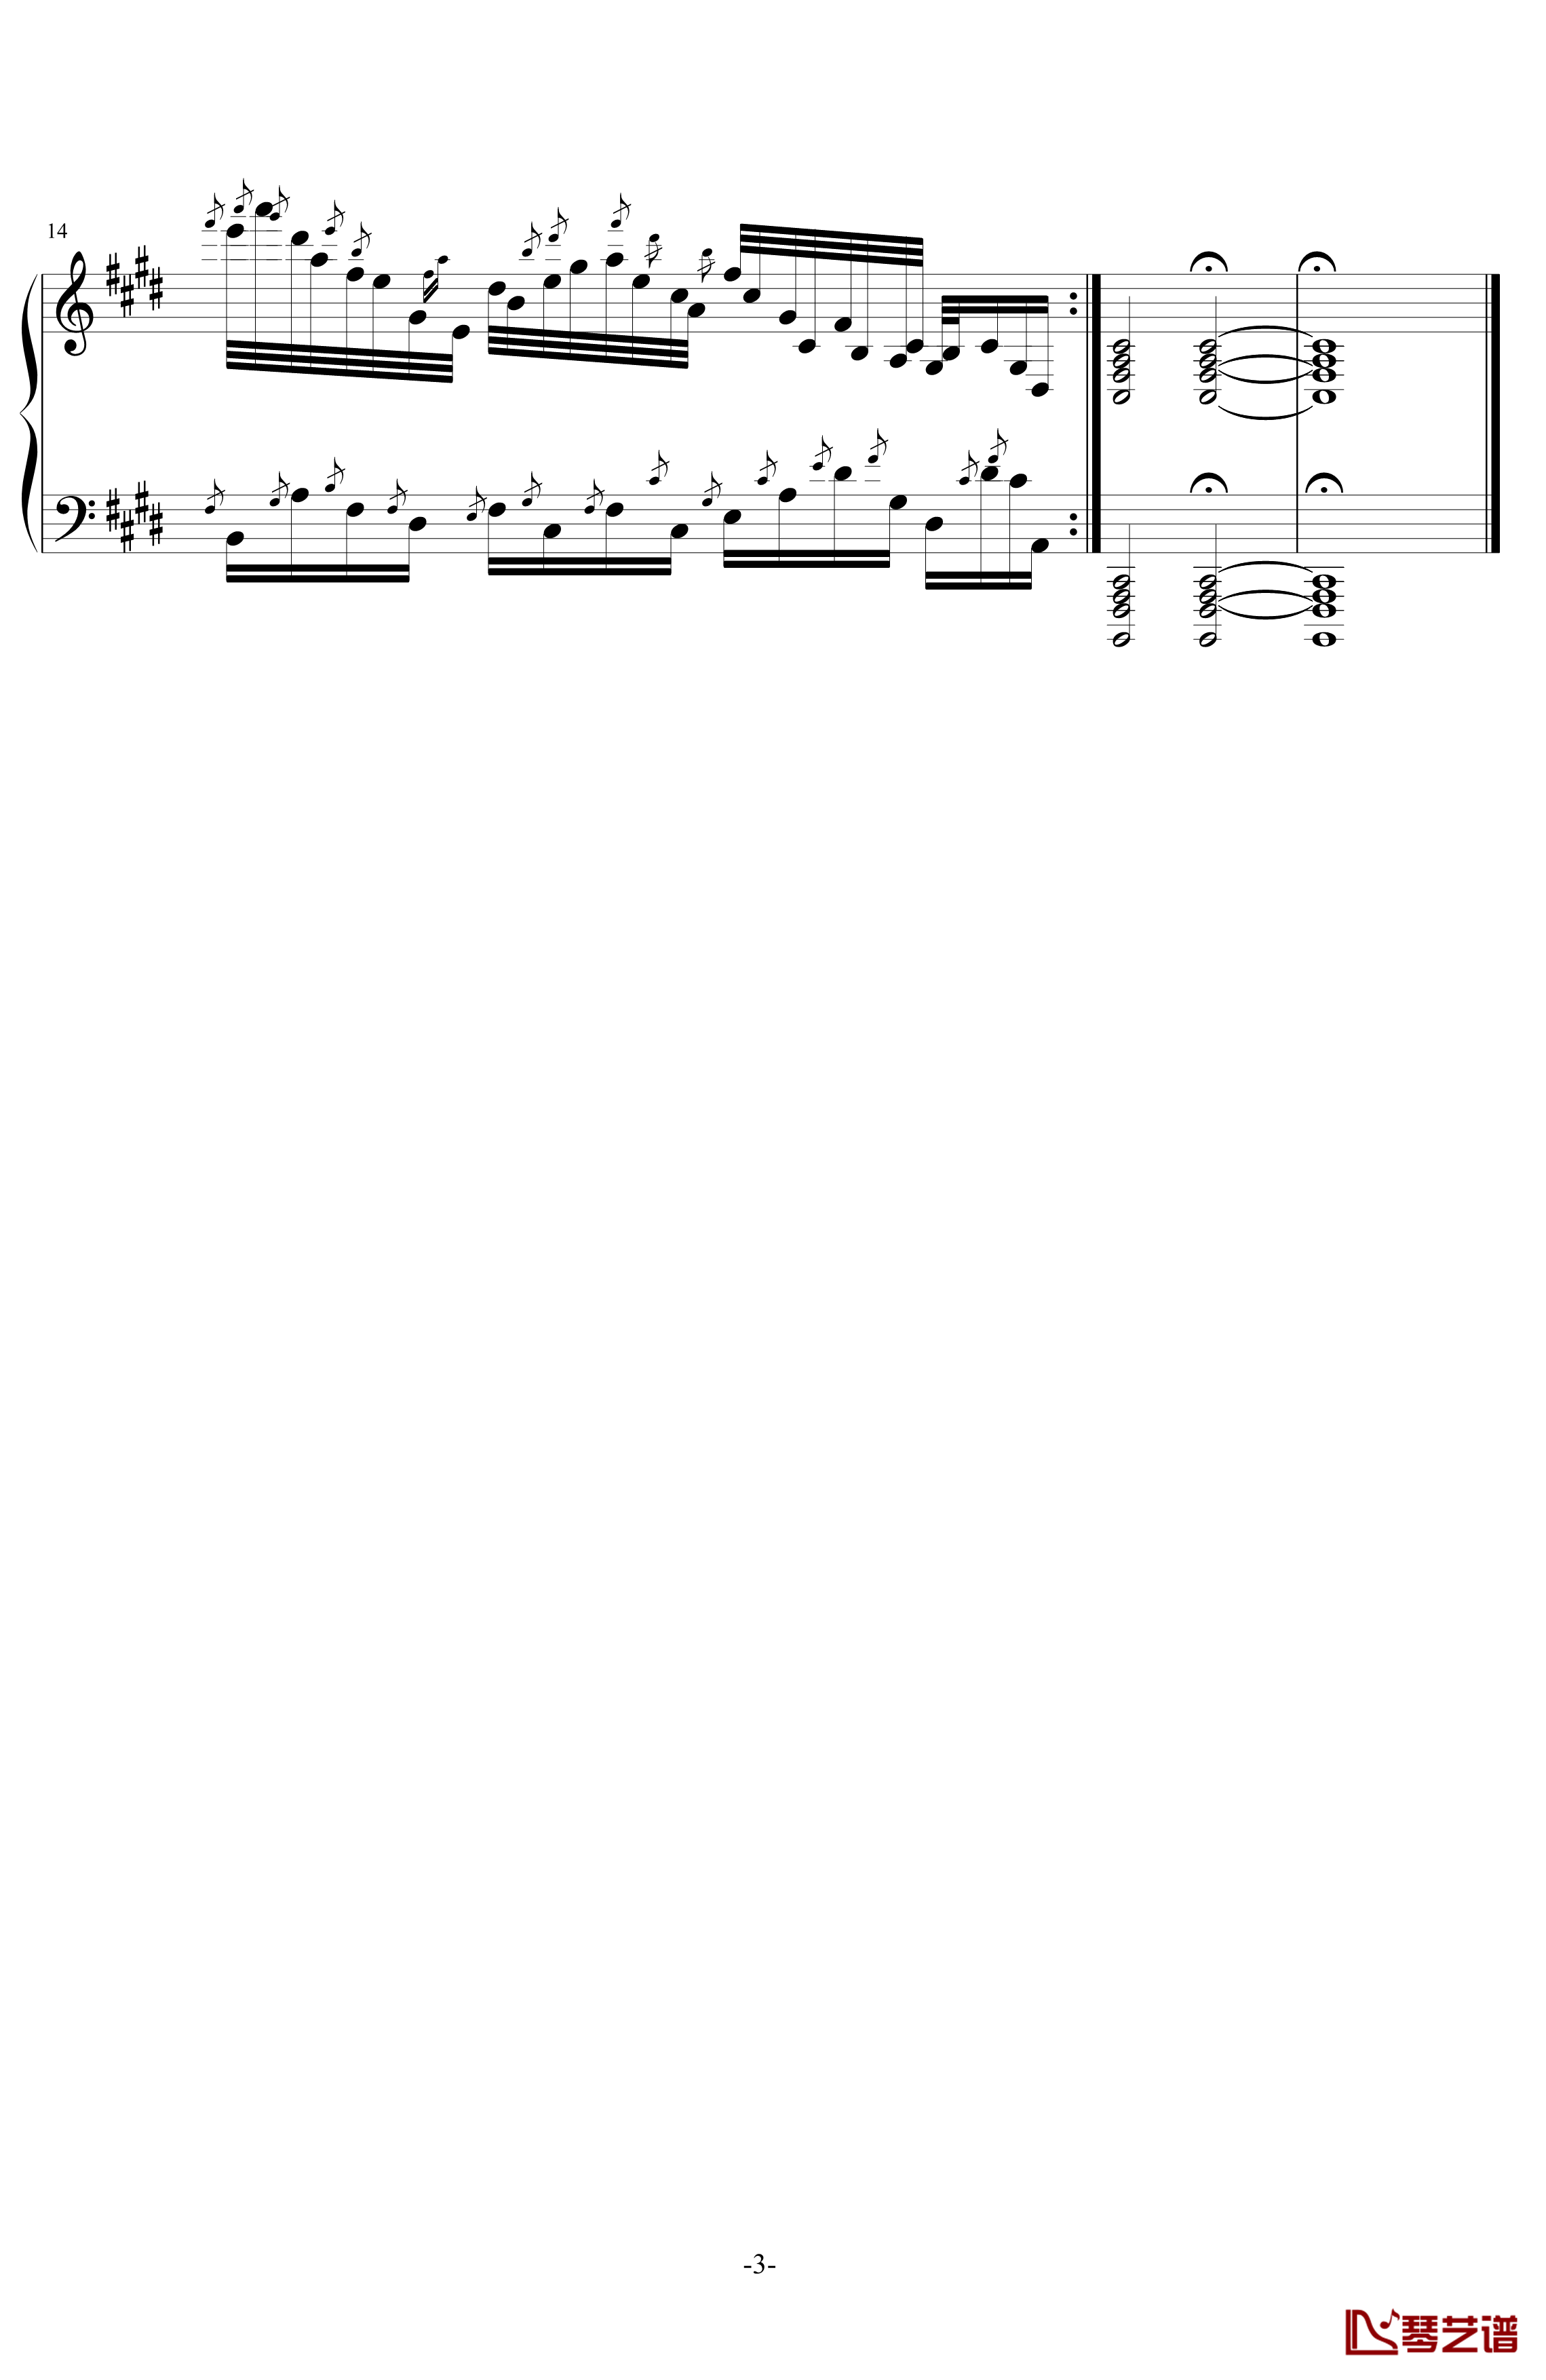 倚音“起义”钢琴谱-第N号练习曲-记memory忆3